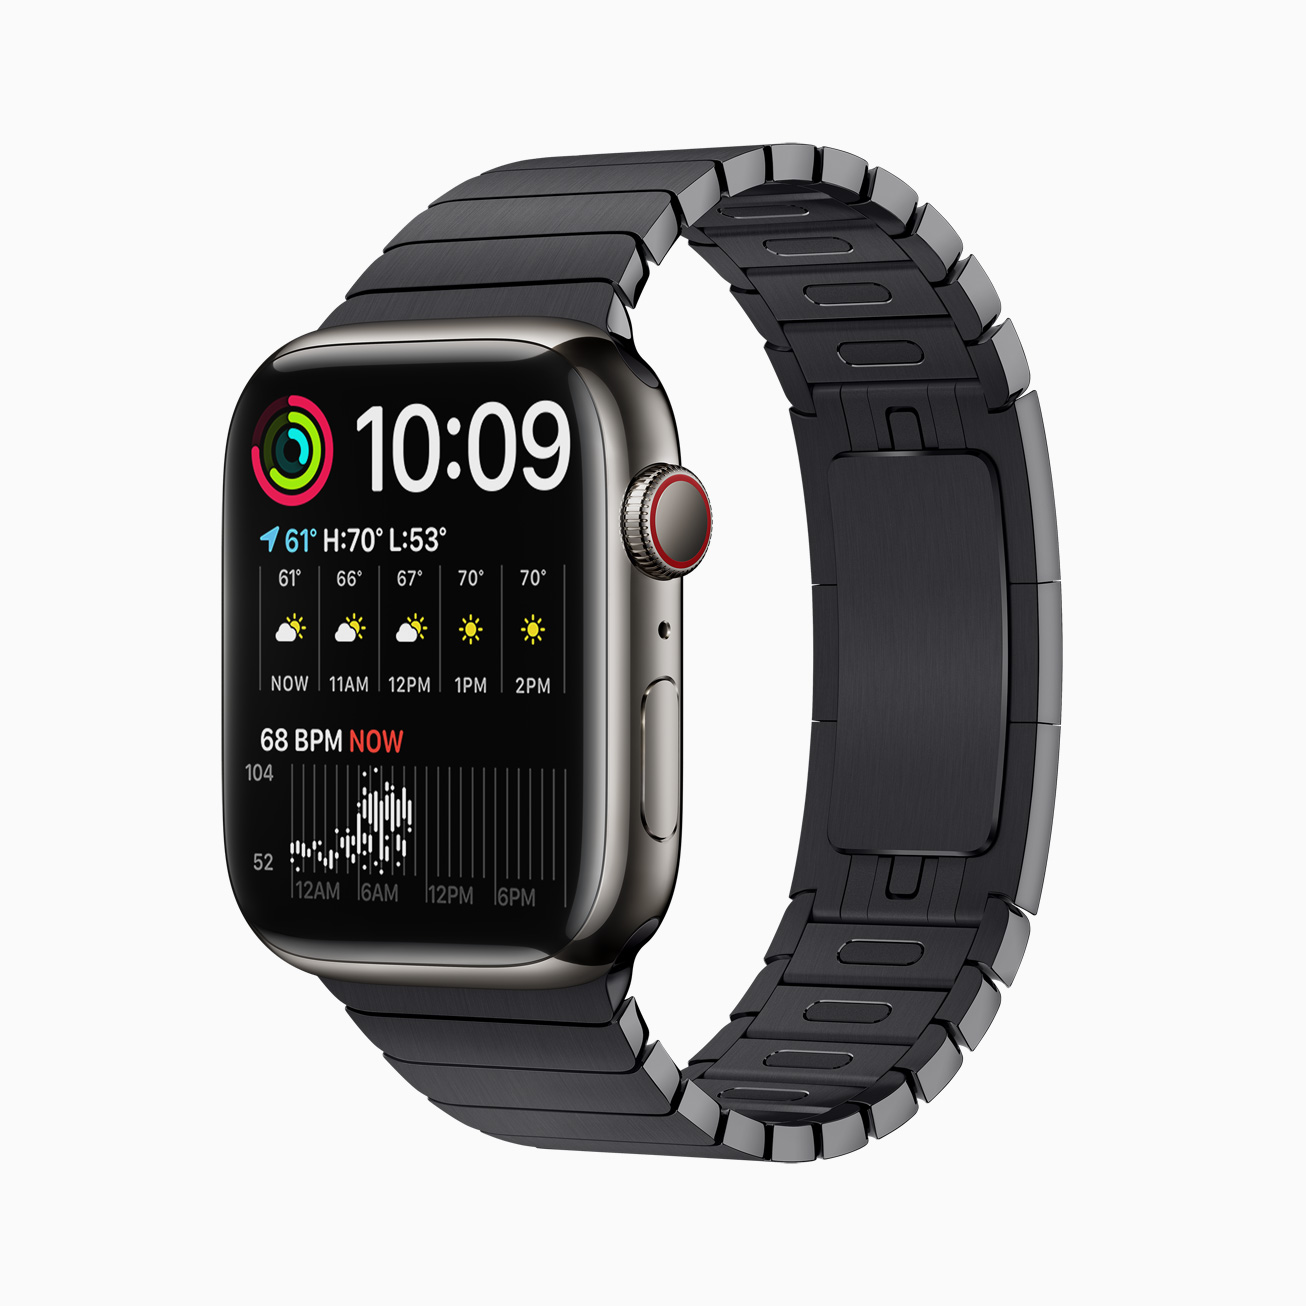 Apple Watch Series 7 宣布於 10/8 訂購、10/15 開賣 | Apple News, Apple Watch Series 7, watchOS 8, 蘋果手錶 | iPhone News 愛瘋了